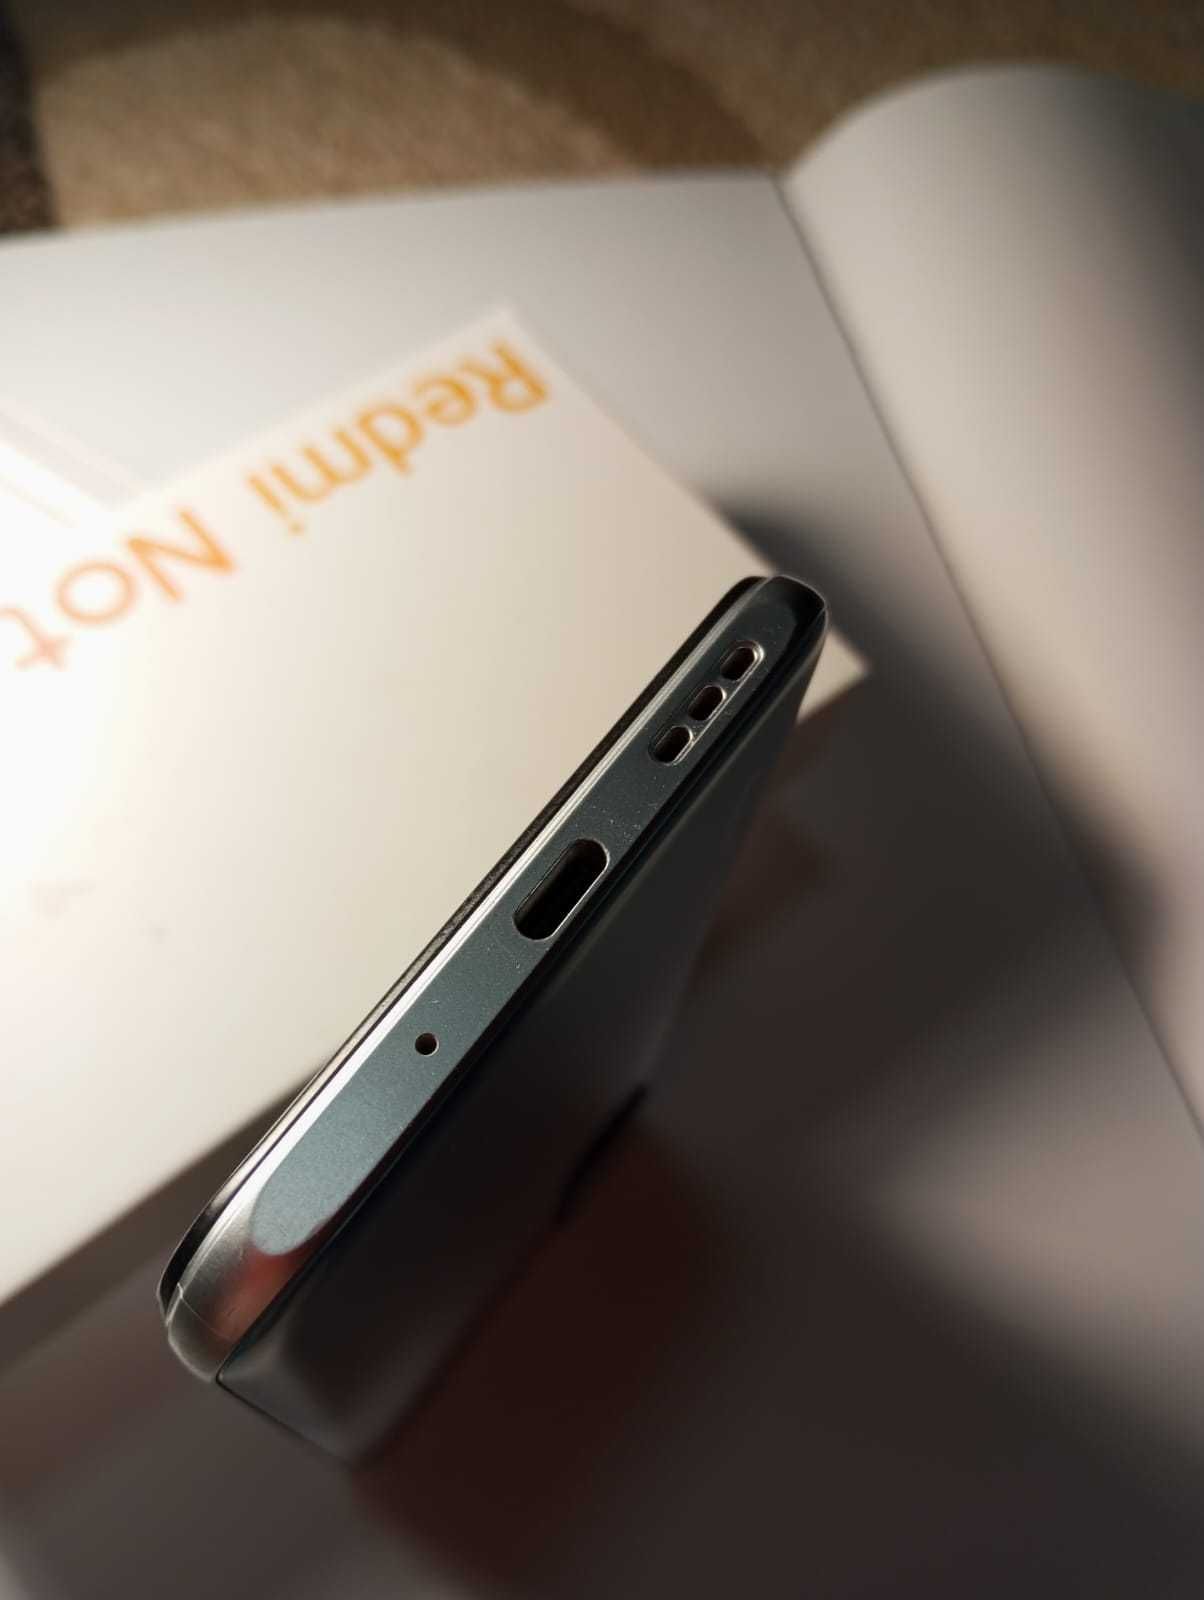 Xiaomi Redmi note 10 Je 5g încă în garanție